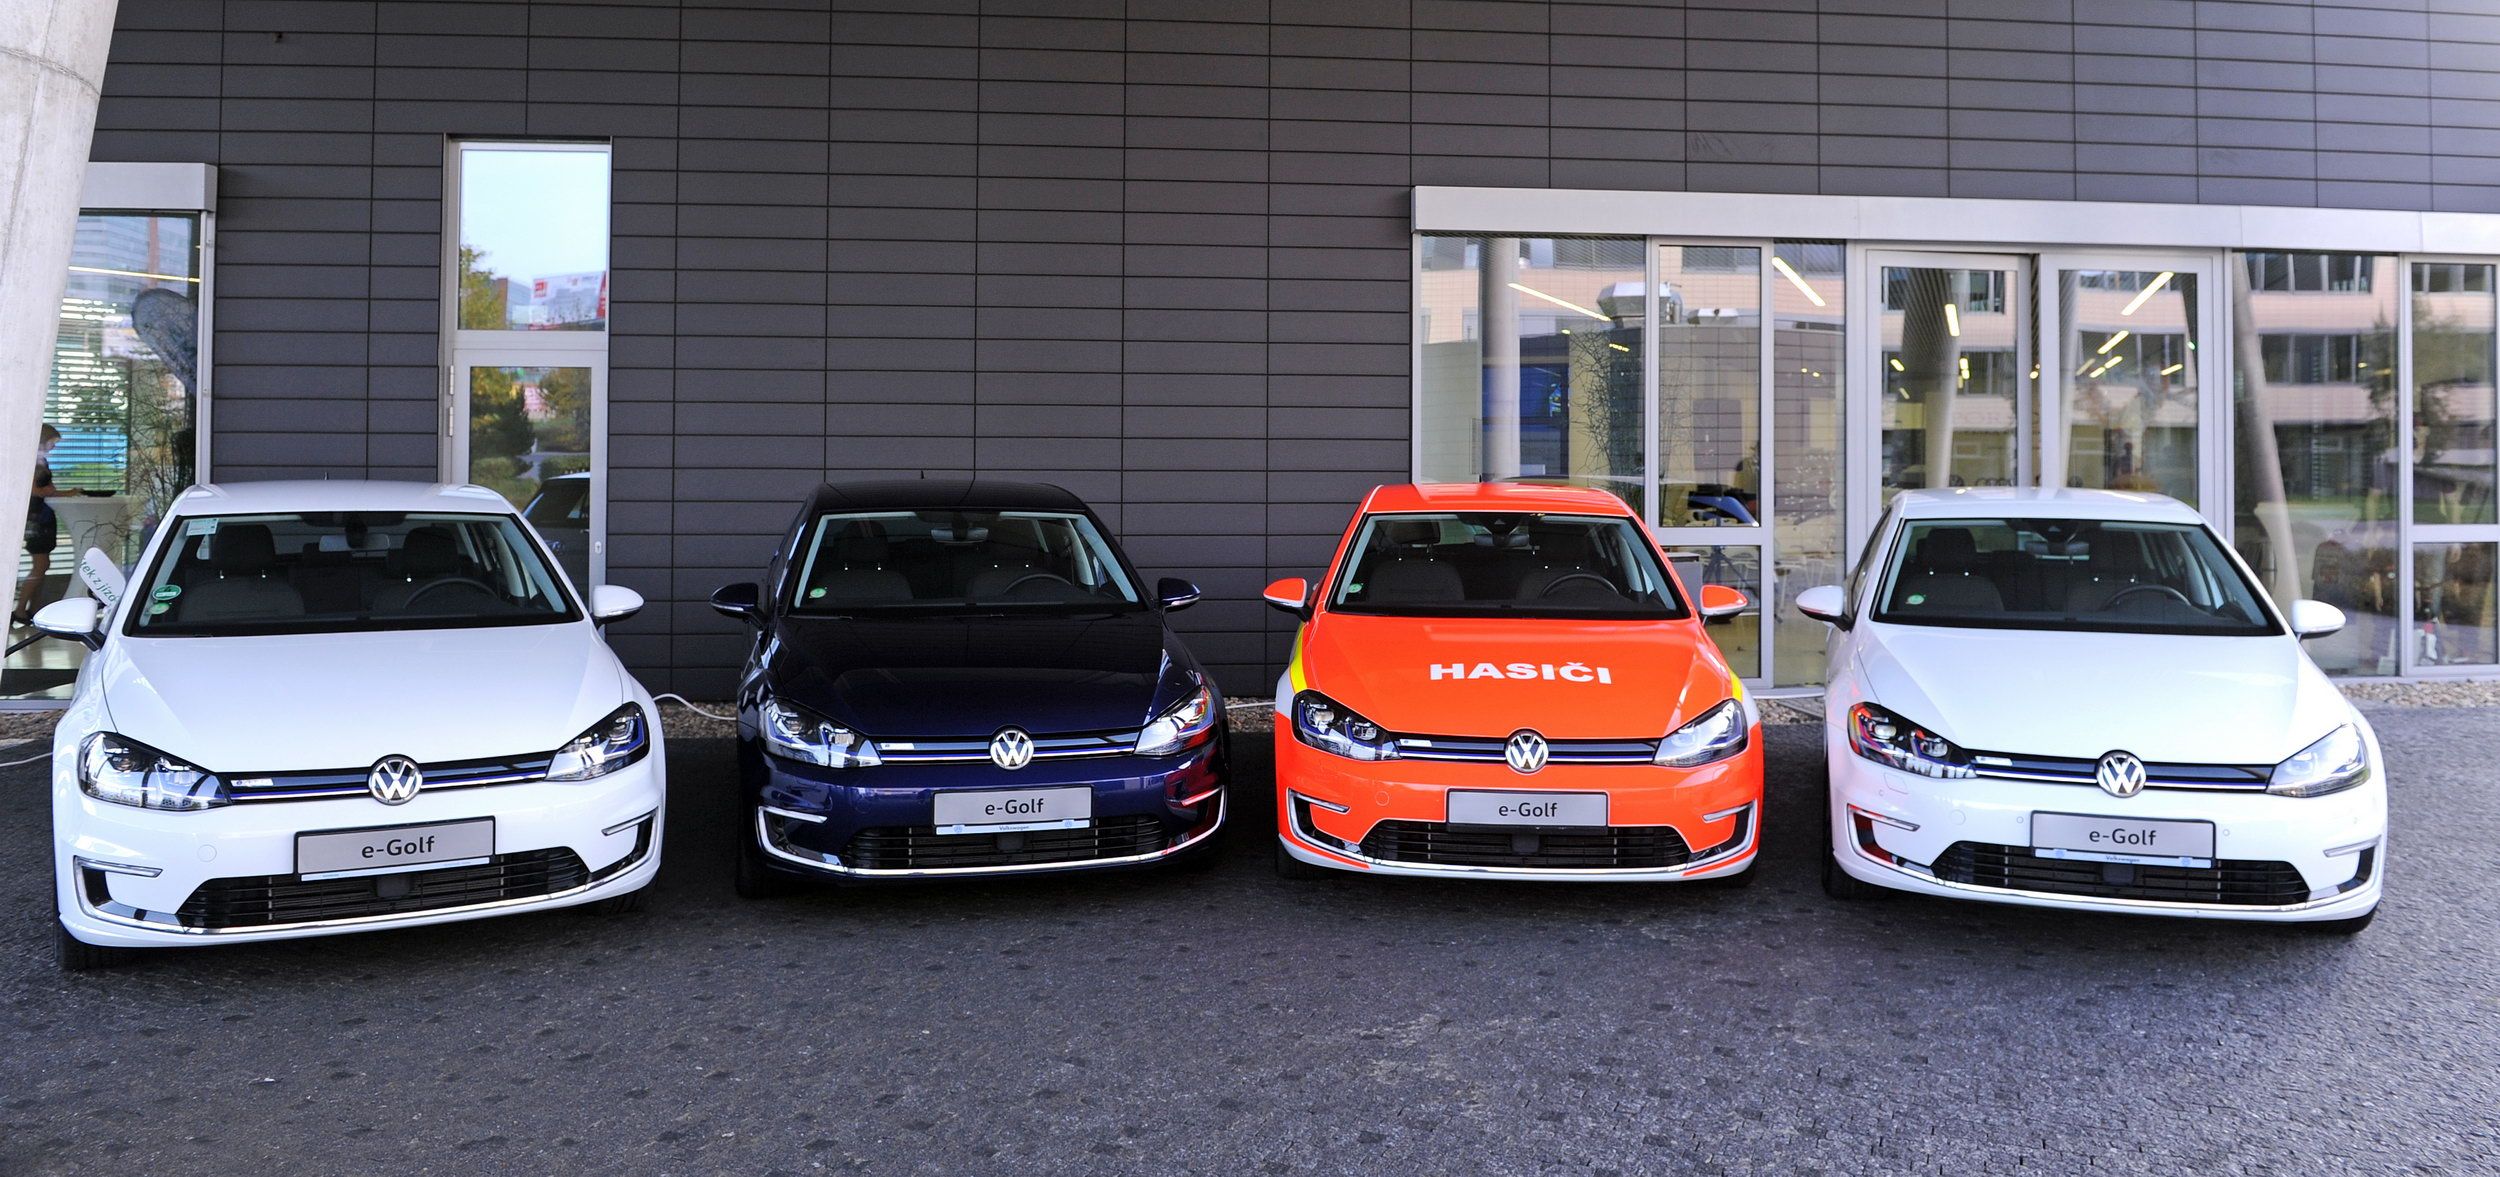 Vozy Volkswagen e-Golf určené k zapůjčení